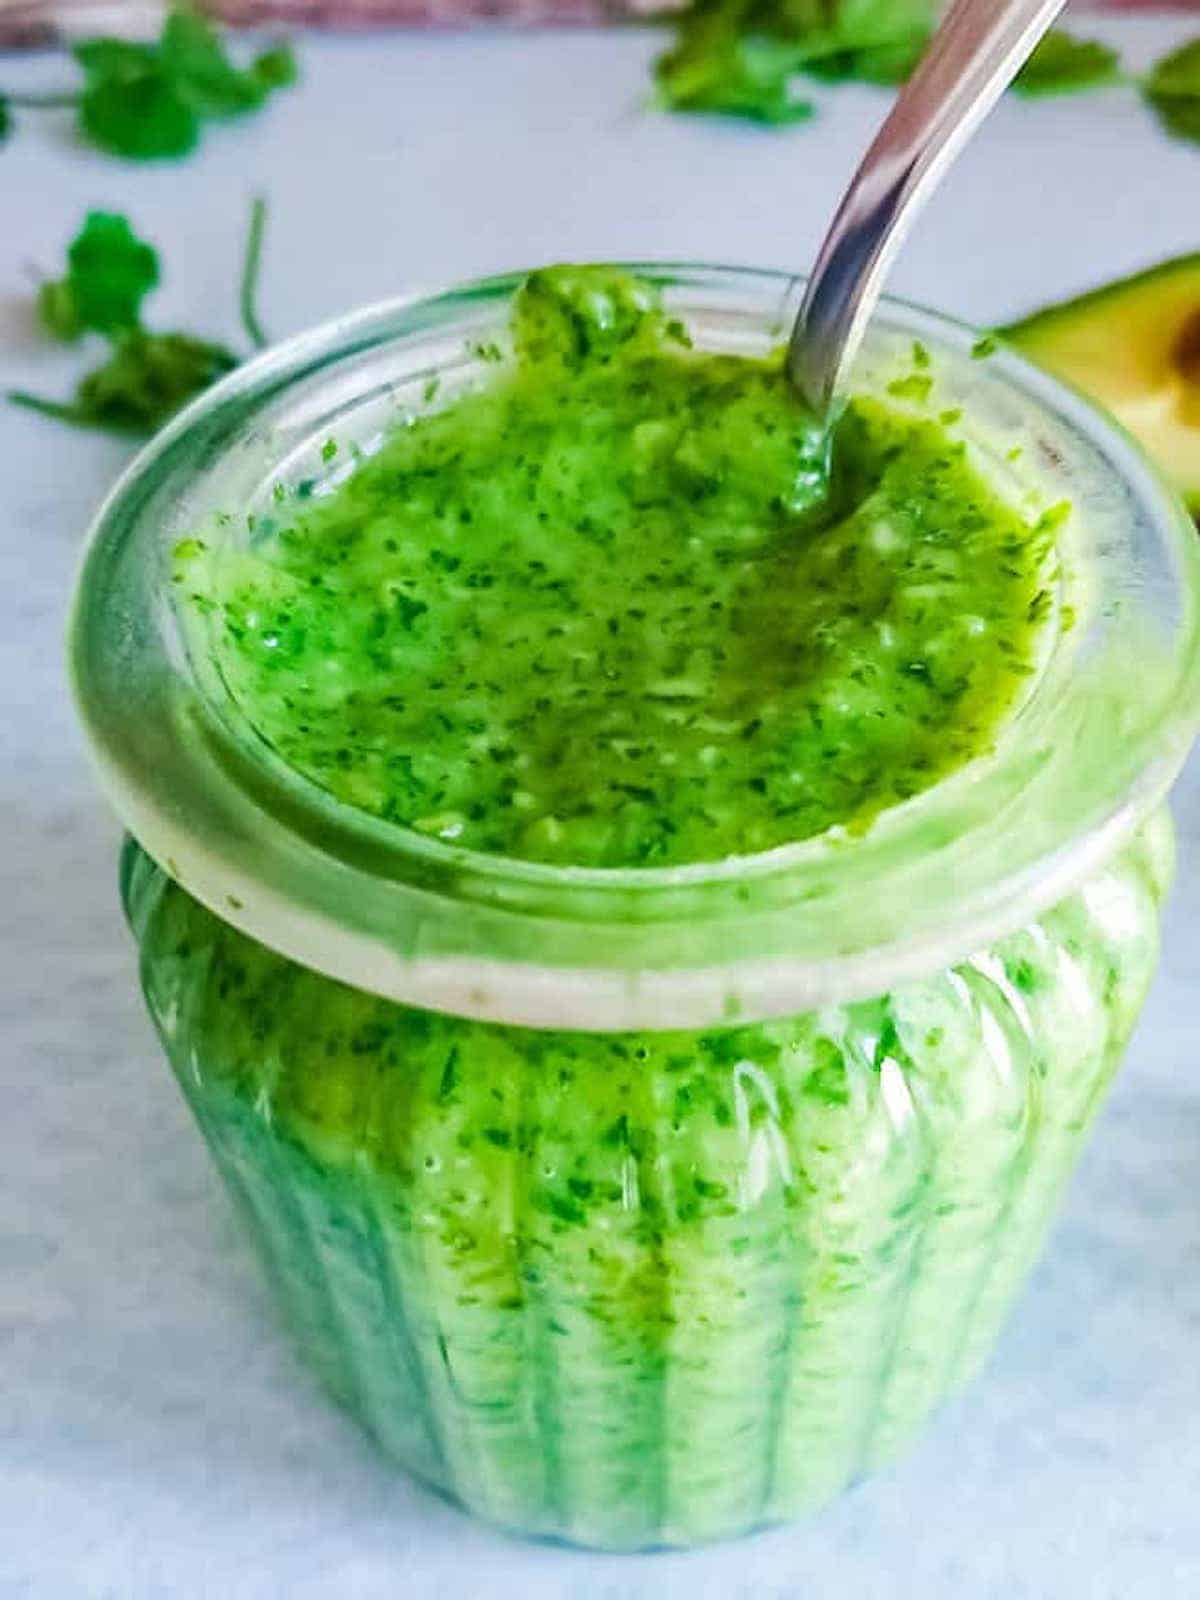 Bright green avocado chutney in a glass jar.